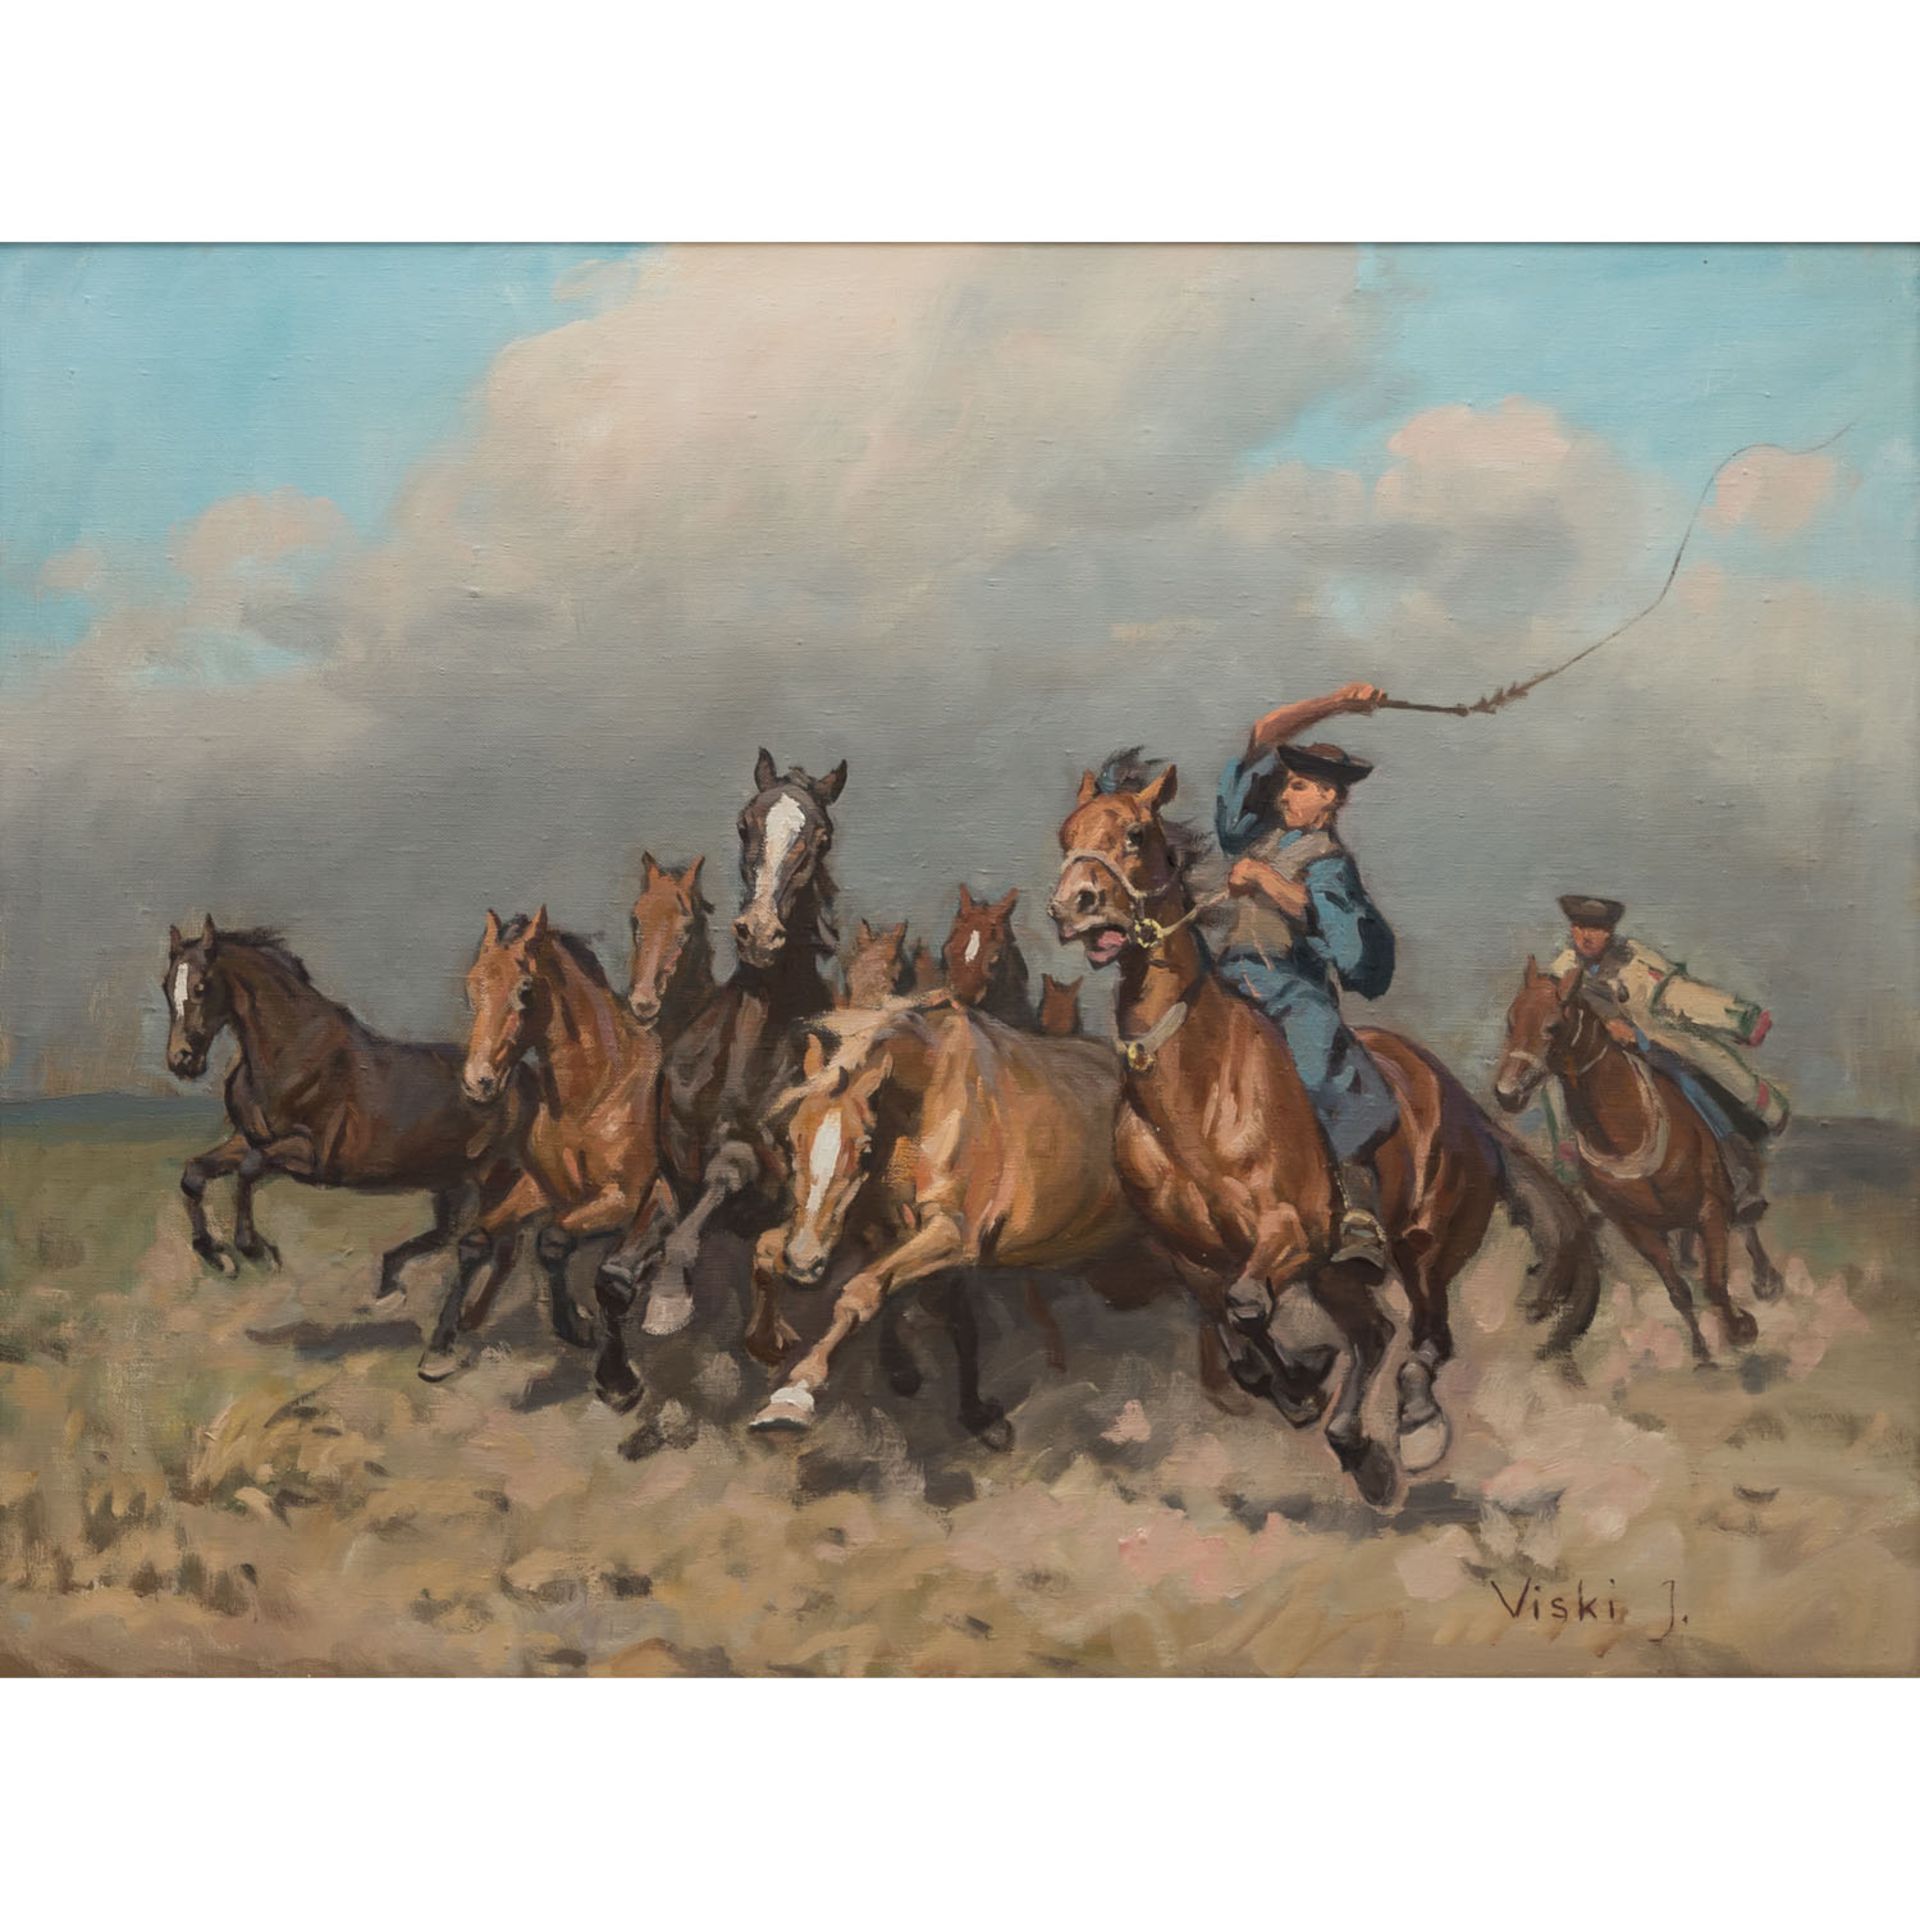 VISKI, JÁNOS (1891-1987) "Pferdehirten beim Treiben der Herde in weiter Landschaft"Öl/Leinwand,